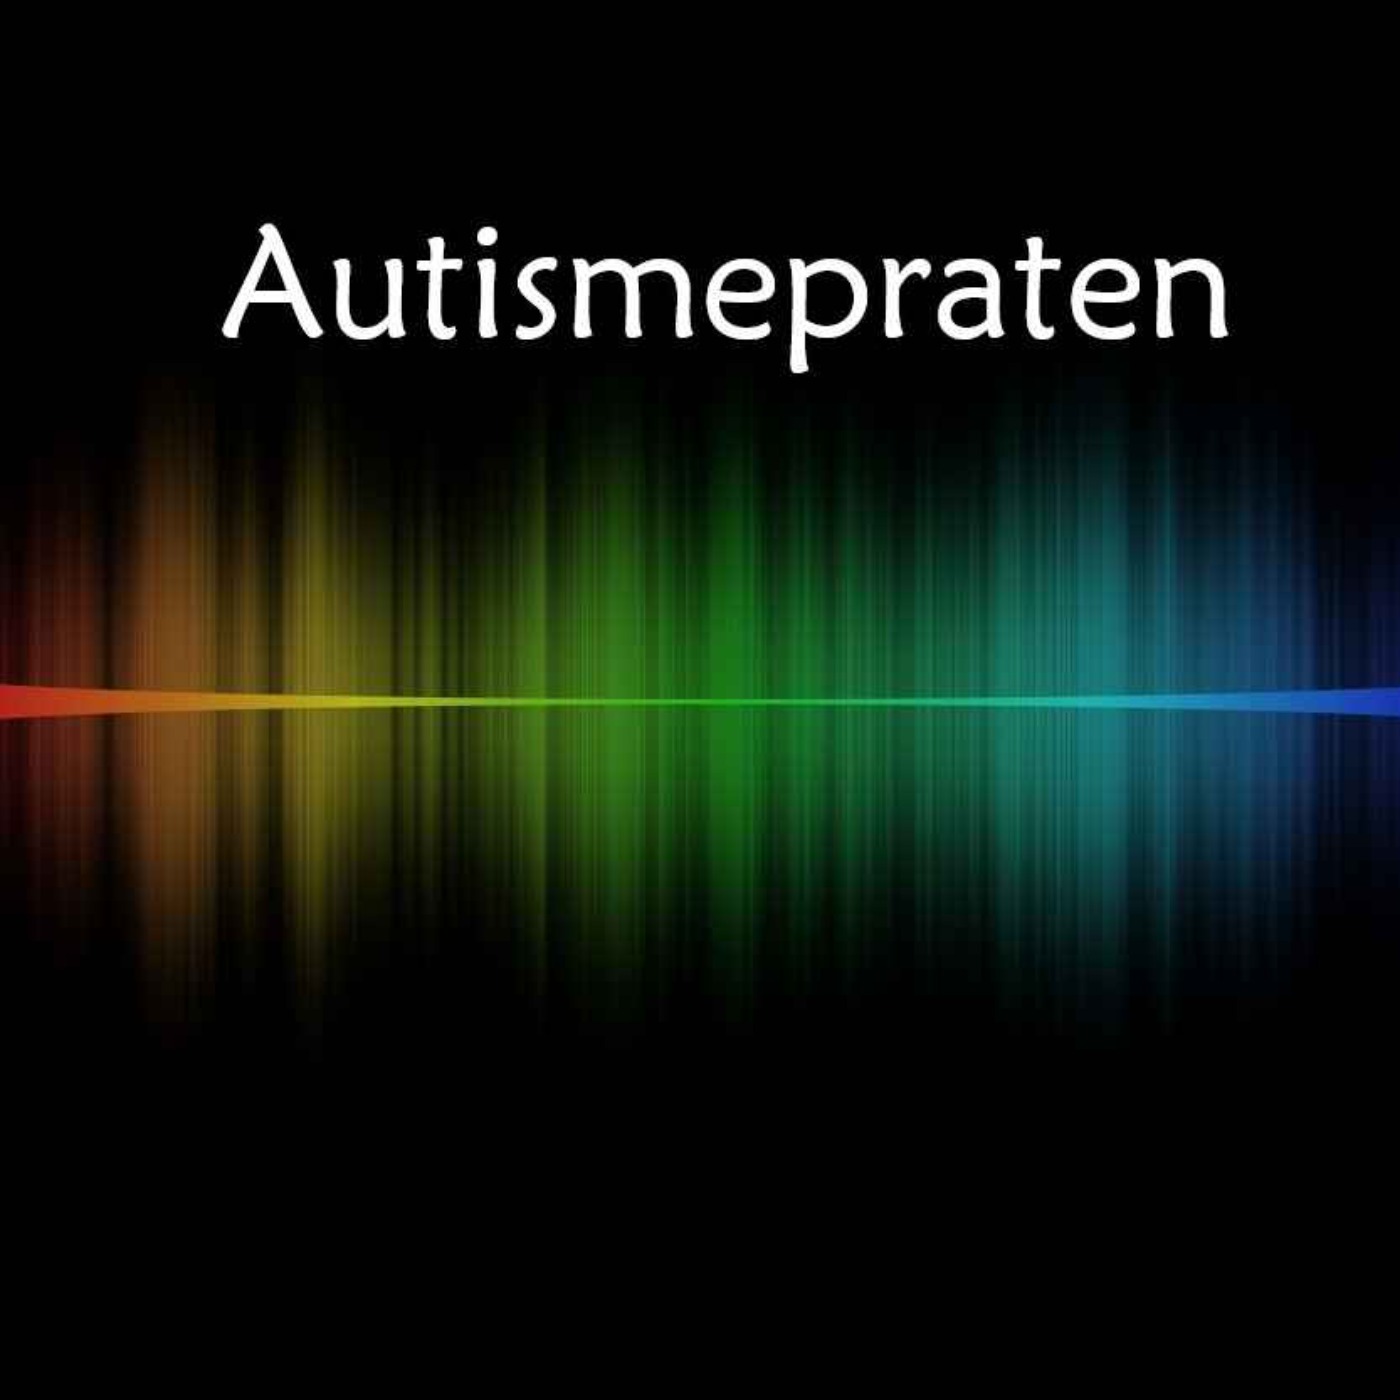 Autismepraten episode 1 - Hva er autisme?